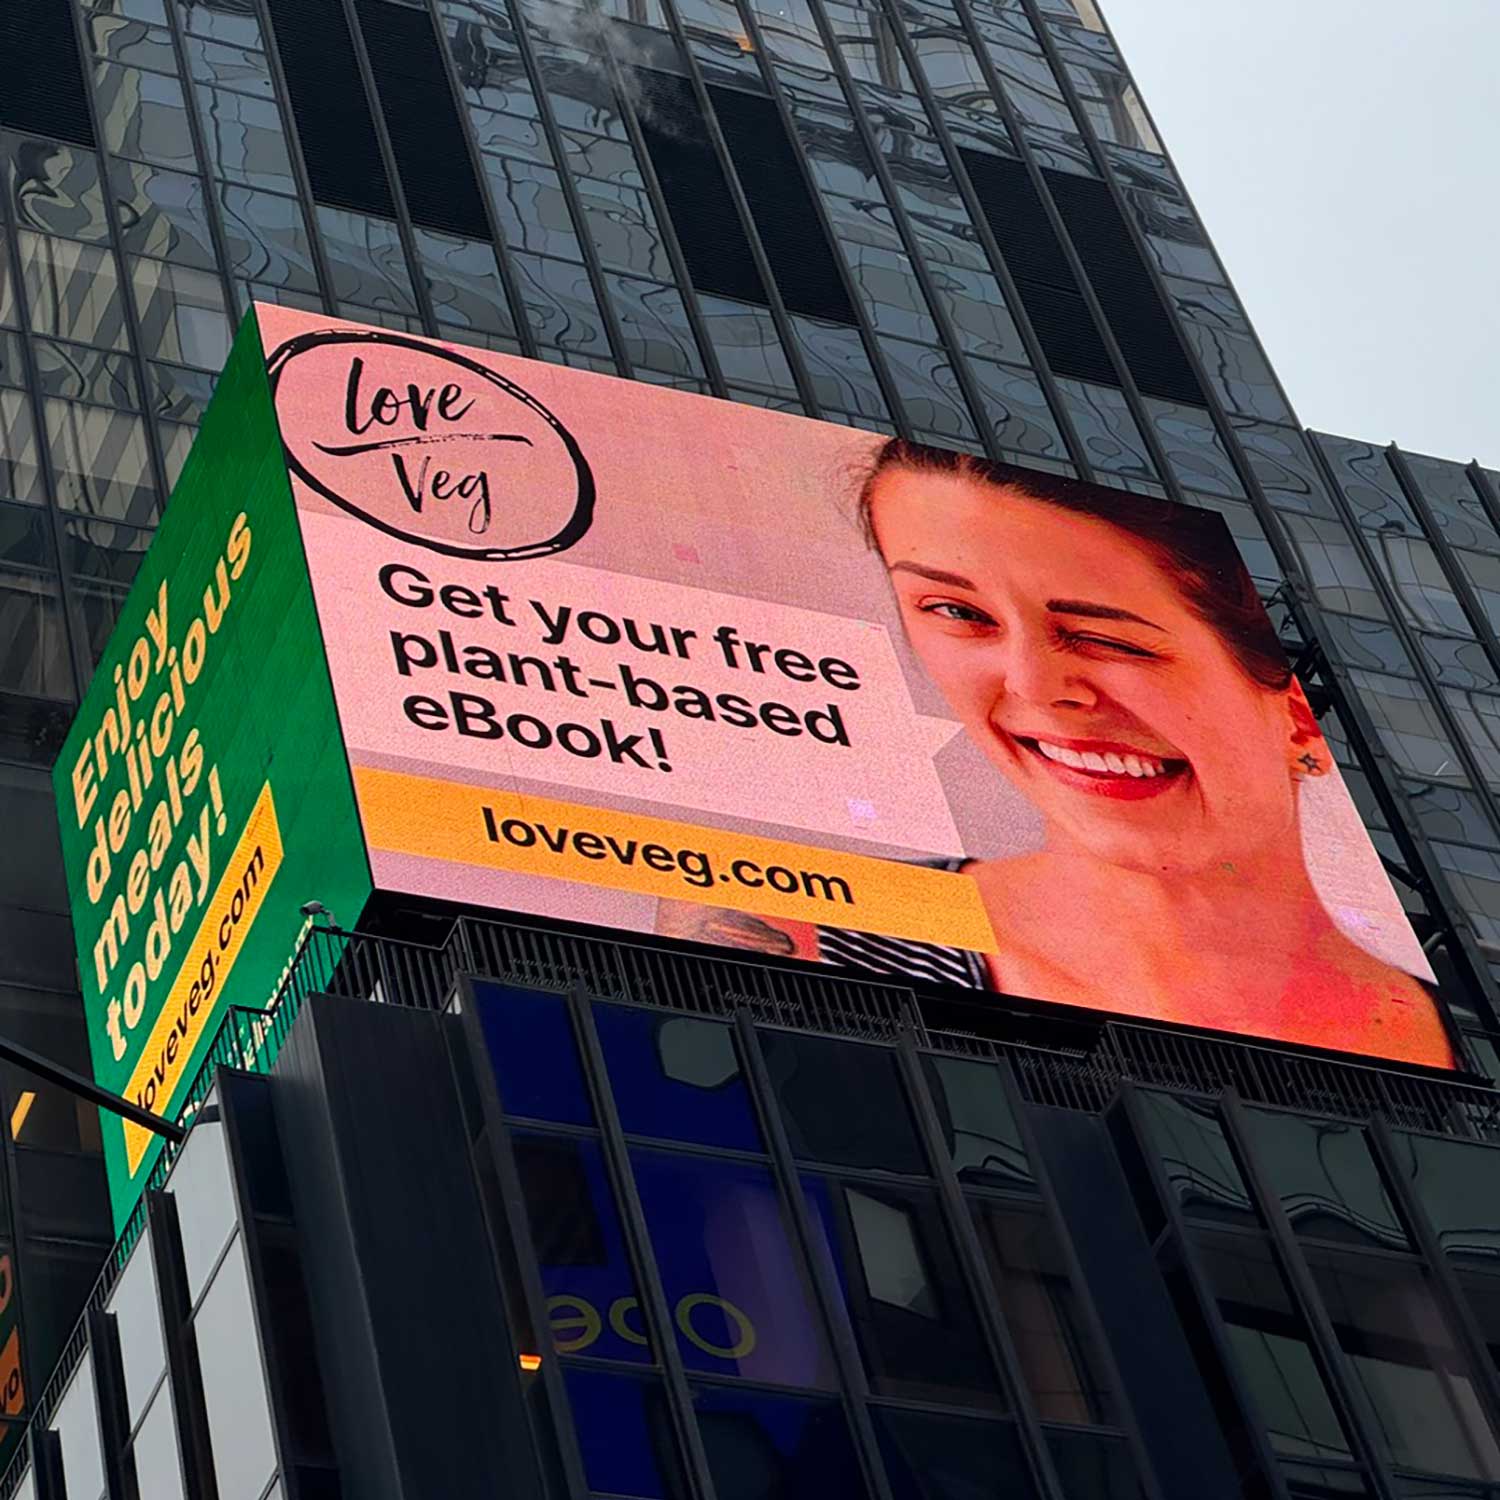 love veg billboard in Times Square